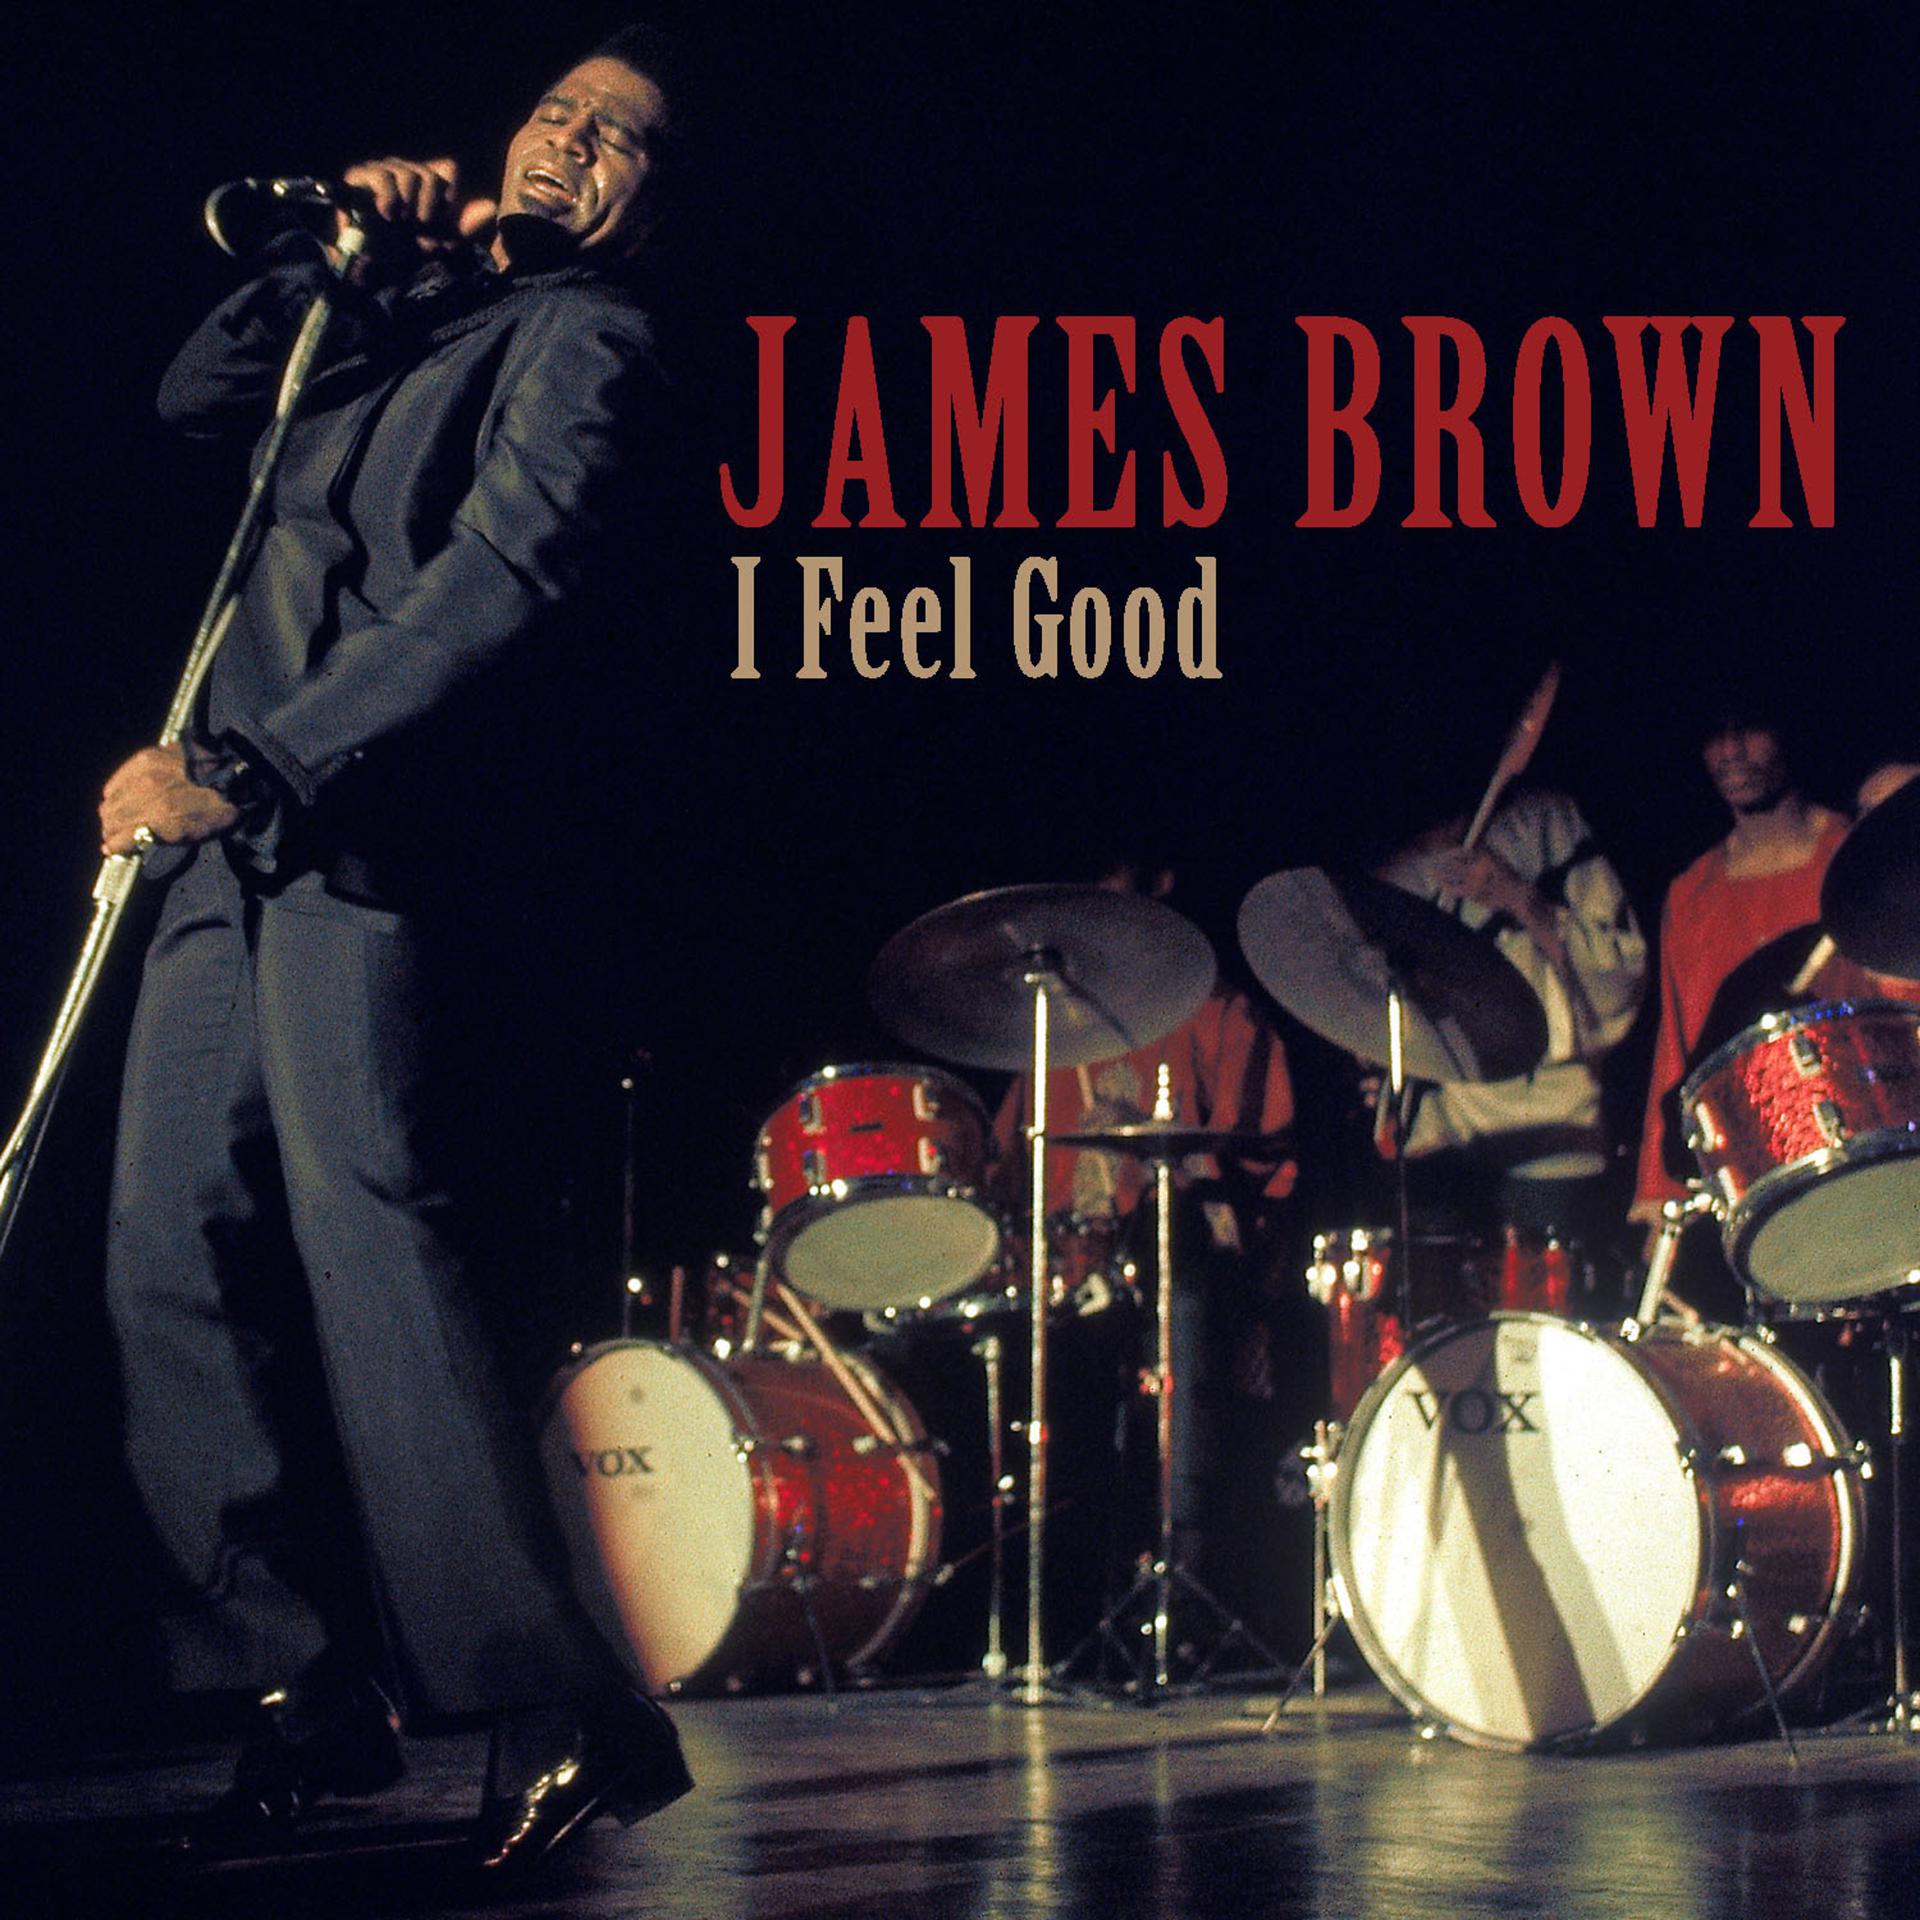 James Brown i got you (i feel good) обложка. I feel good James Brown обложка.